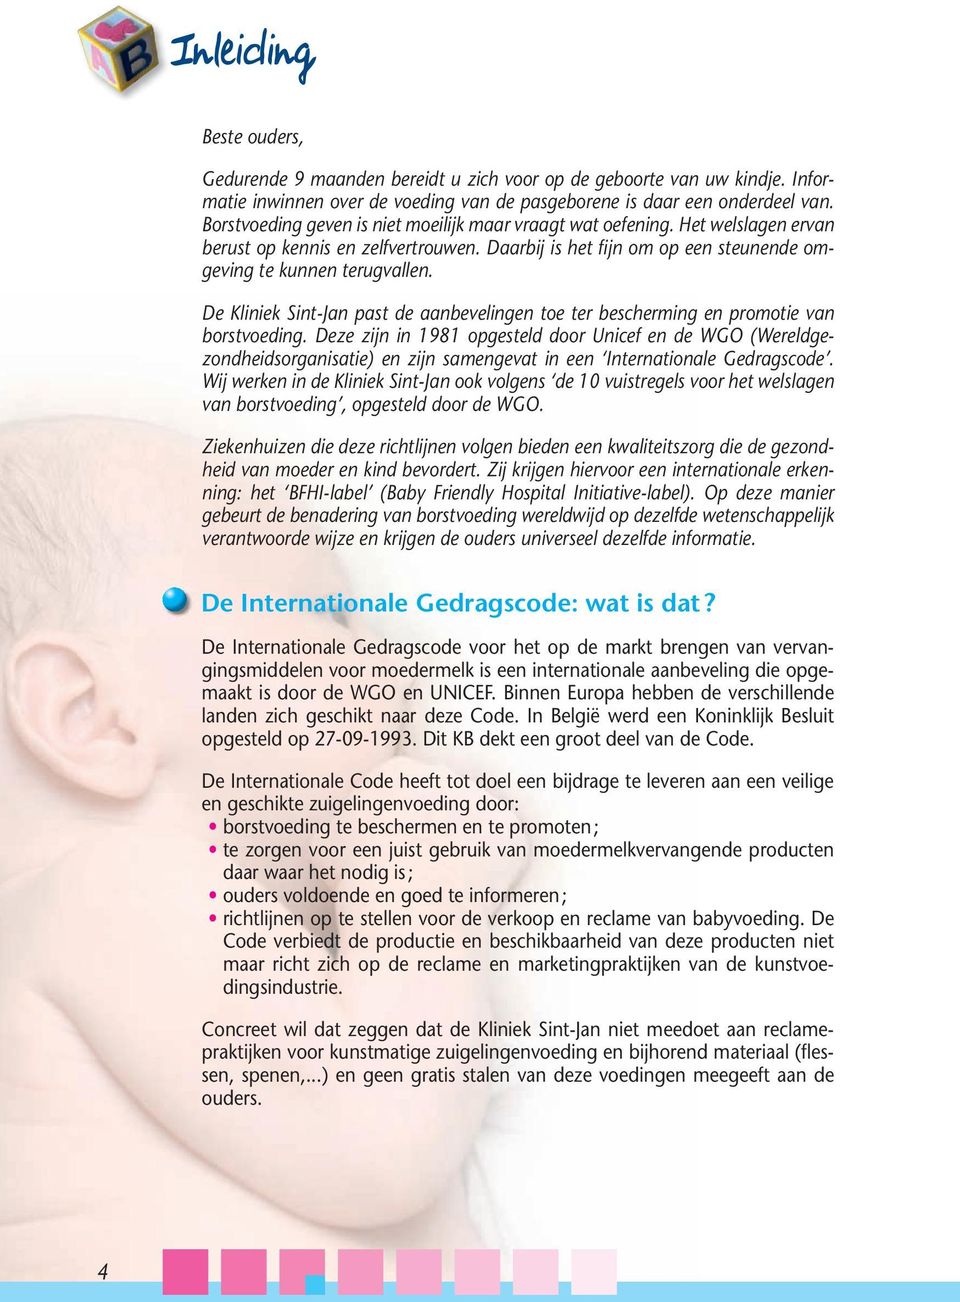 De Kliniek Sint-Jan past de aanbevelingen toe ter bescherming en promotie van borstvoeding.